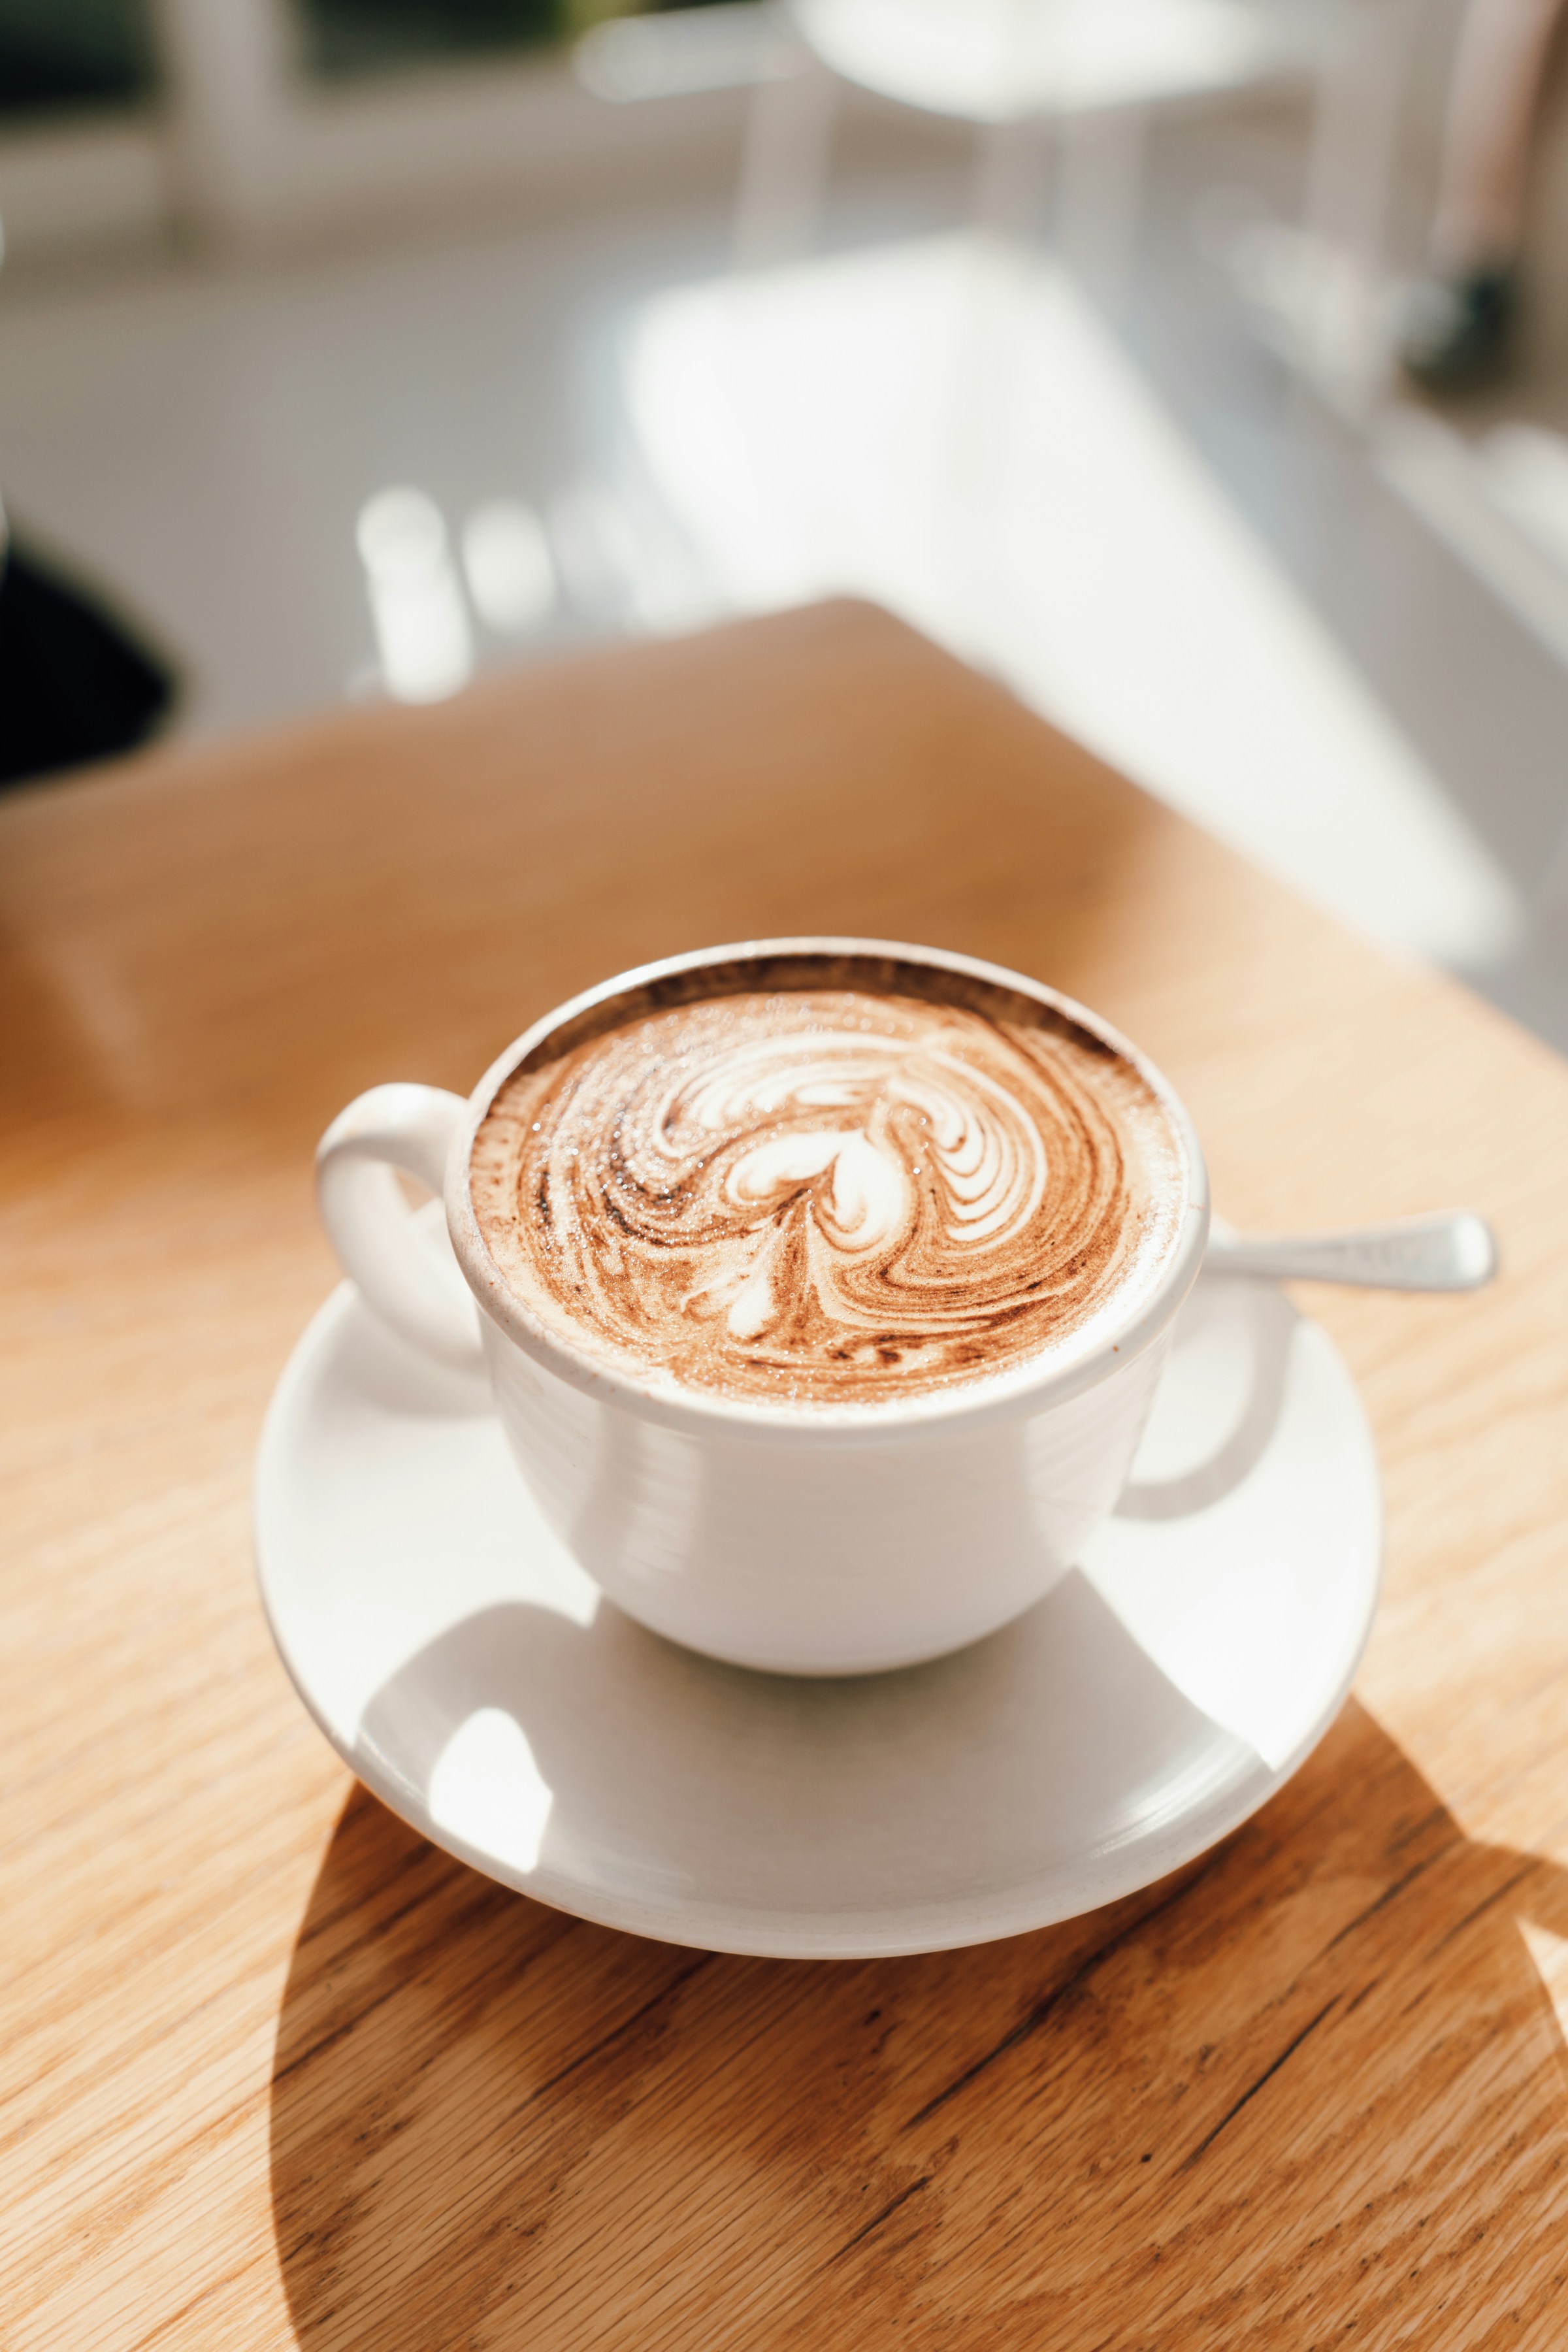 Eine Tasse Kaffee auf einem Holztisch | Quelle: Unsplash